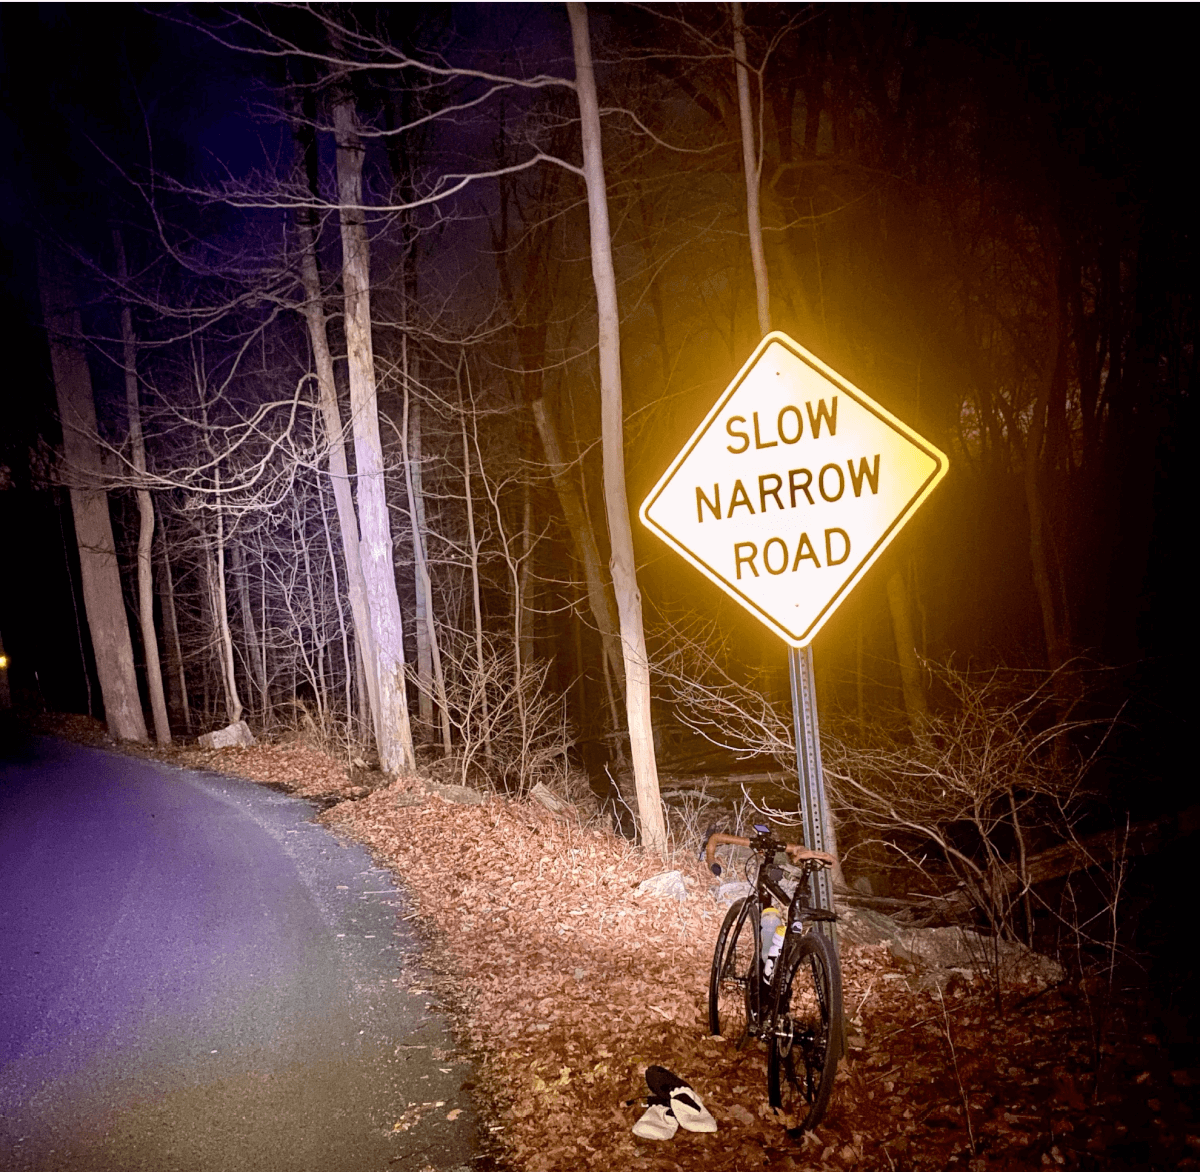 Narrow road sign at night